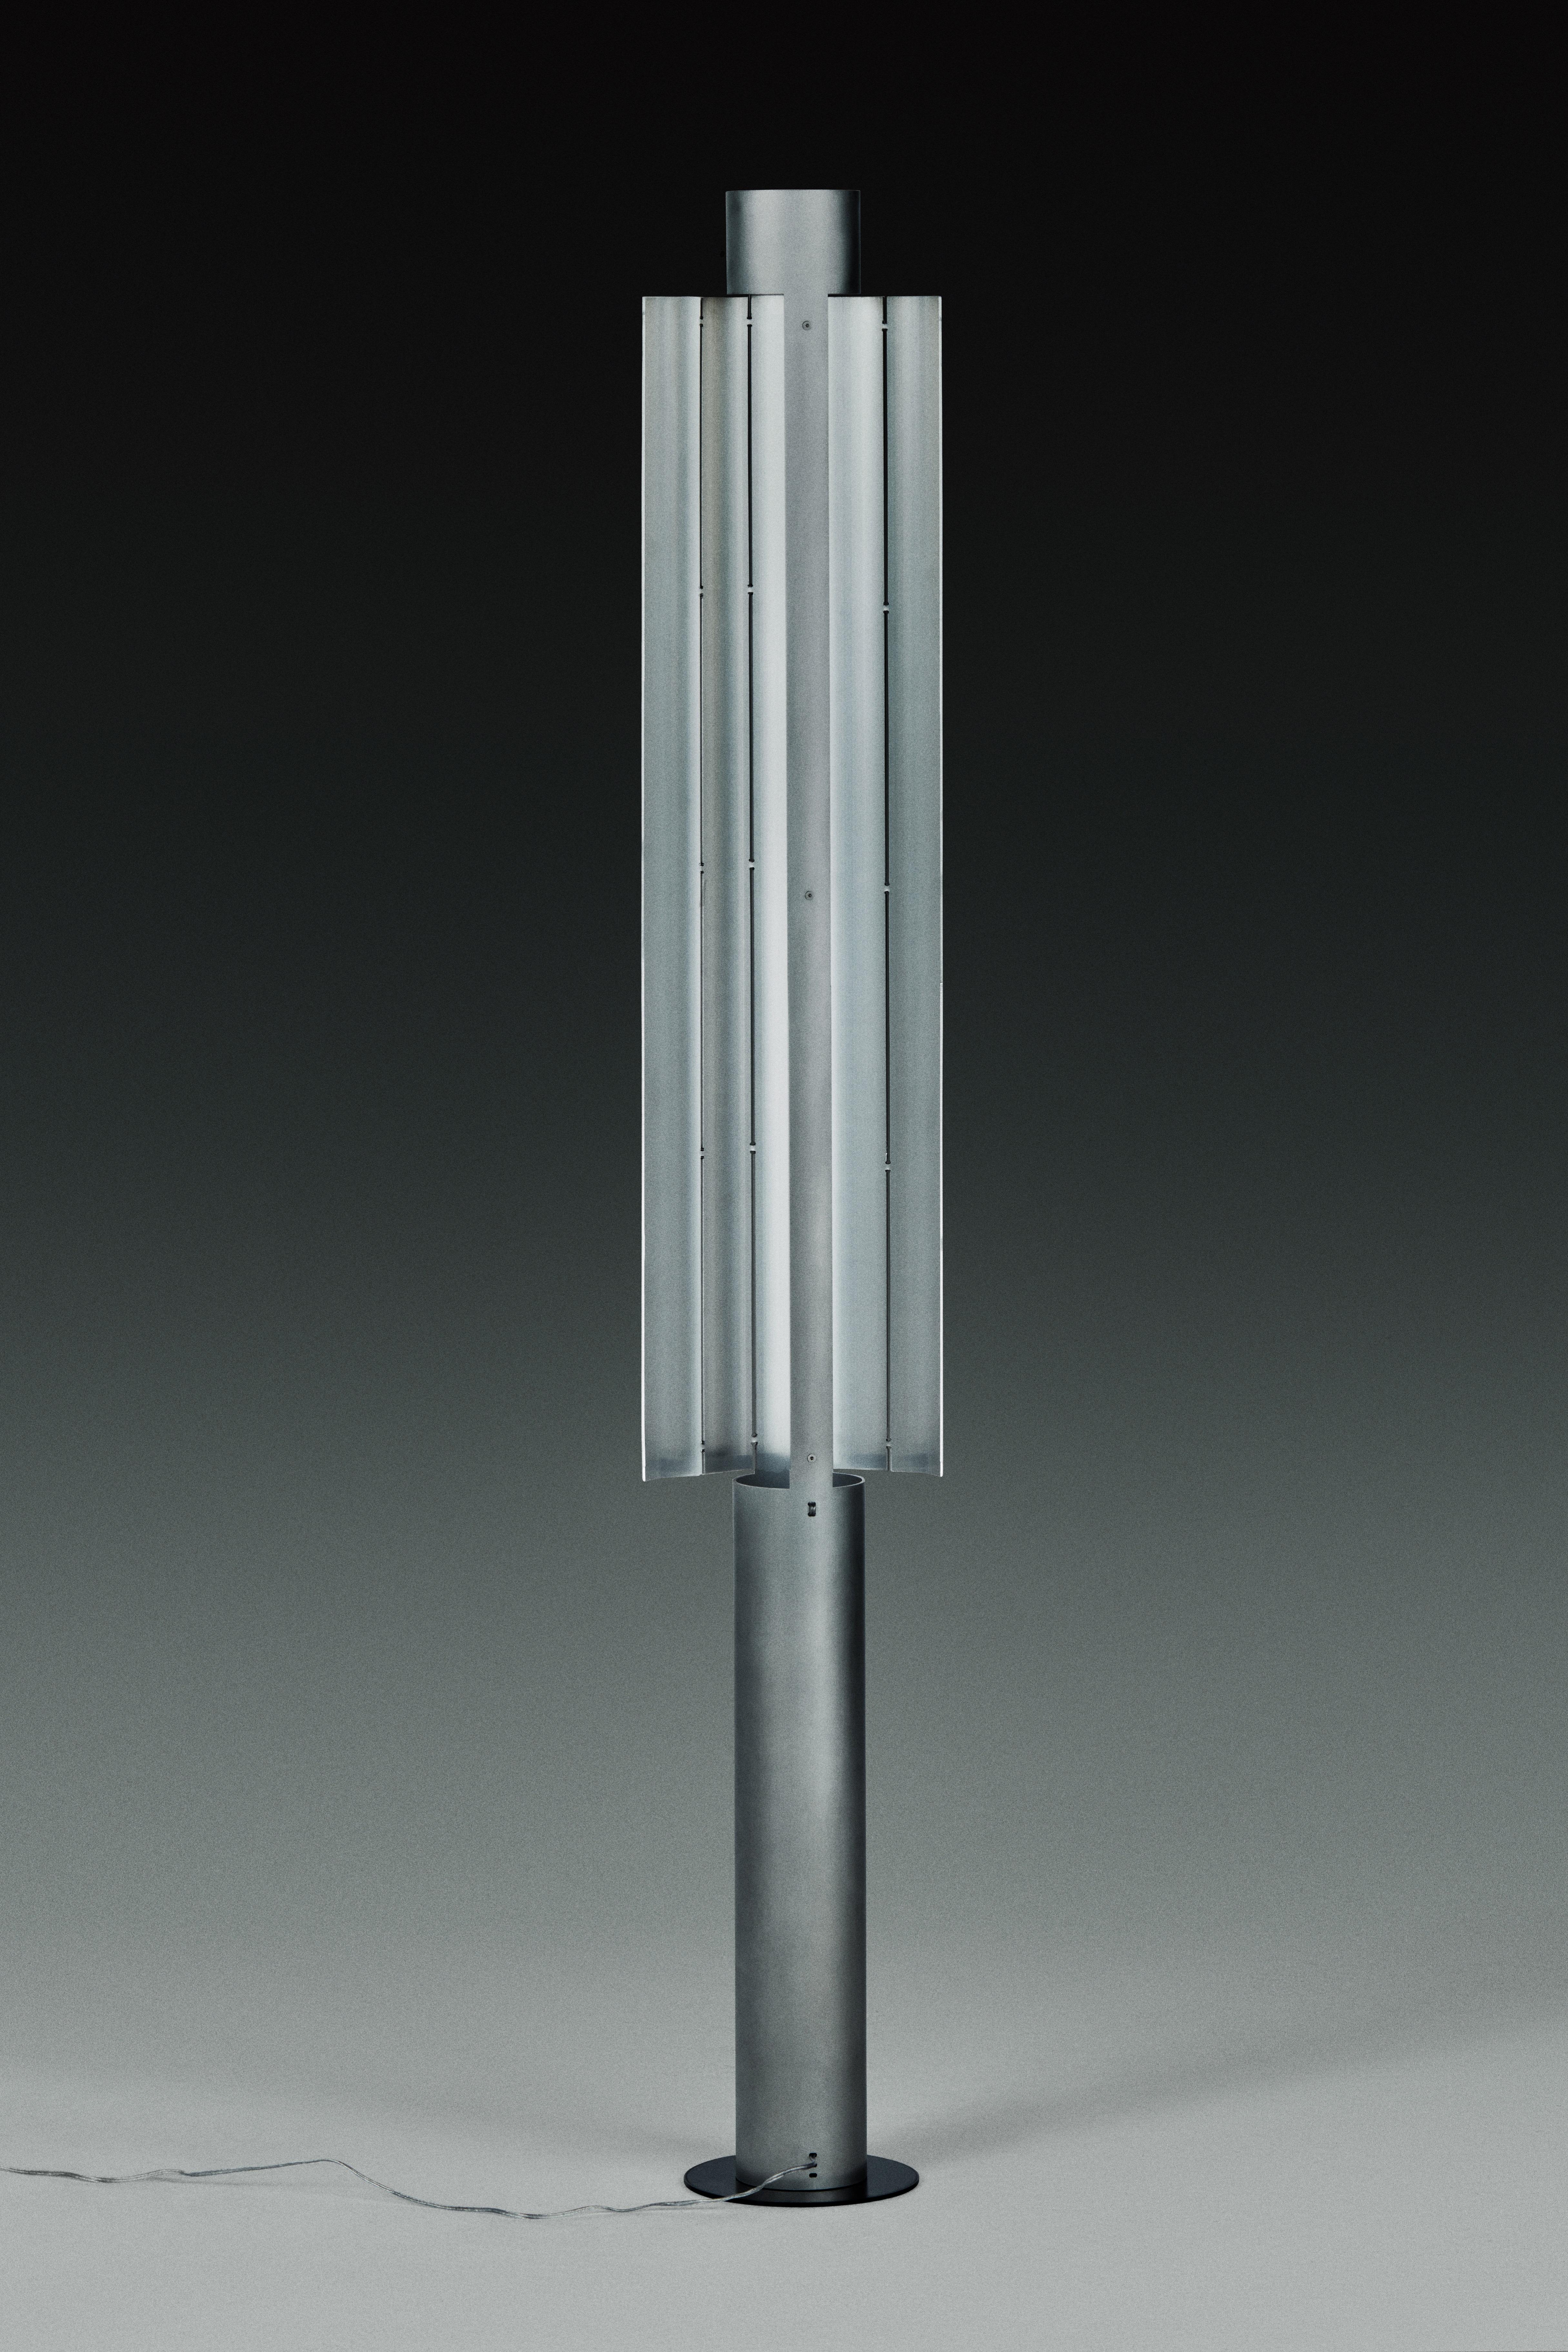 Stehlampe Gvpo von Kutarq Studio
MATERIALIEN: Aluminium.
Abmessungen: T 21 x B 16 x H 135 cm
Maßgeschneiderte Längen sind möglich.

Mattes Aluminium, von Hand patiniert, 3D-gedruckte PLA-Basis (Silber oder Schwarz).
Lichtquelle: 2 x parallele warme